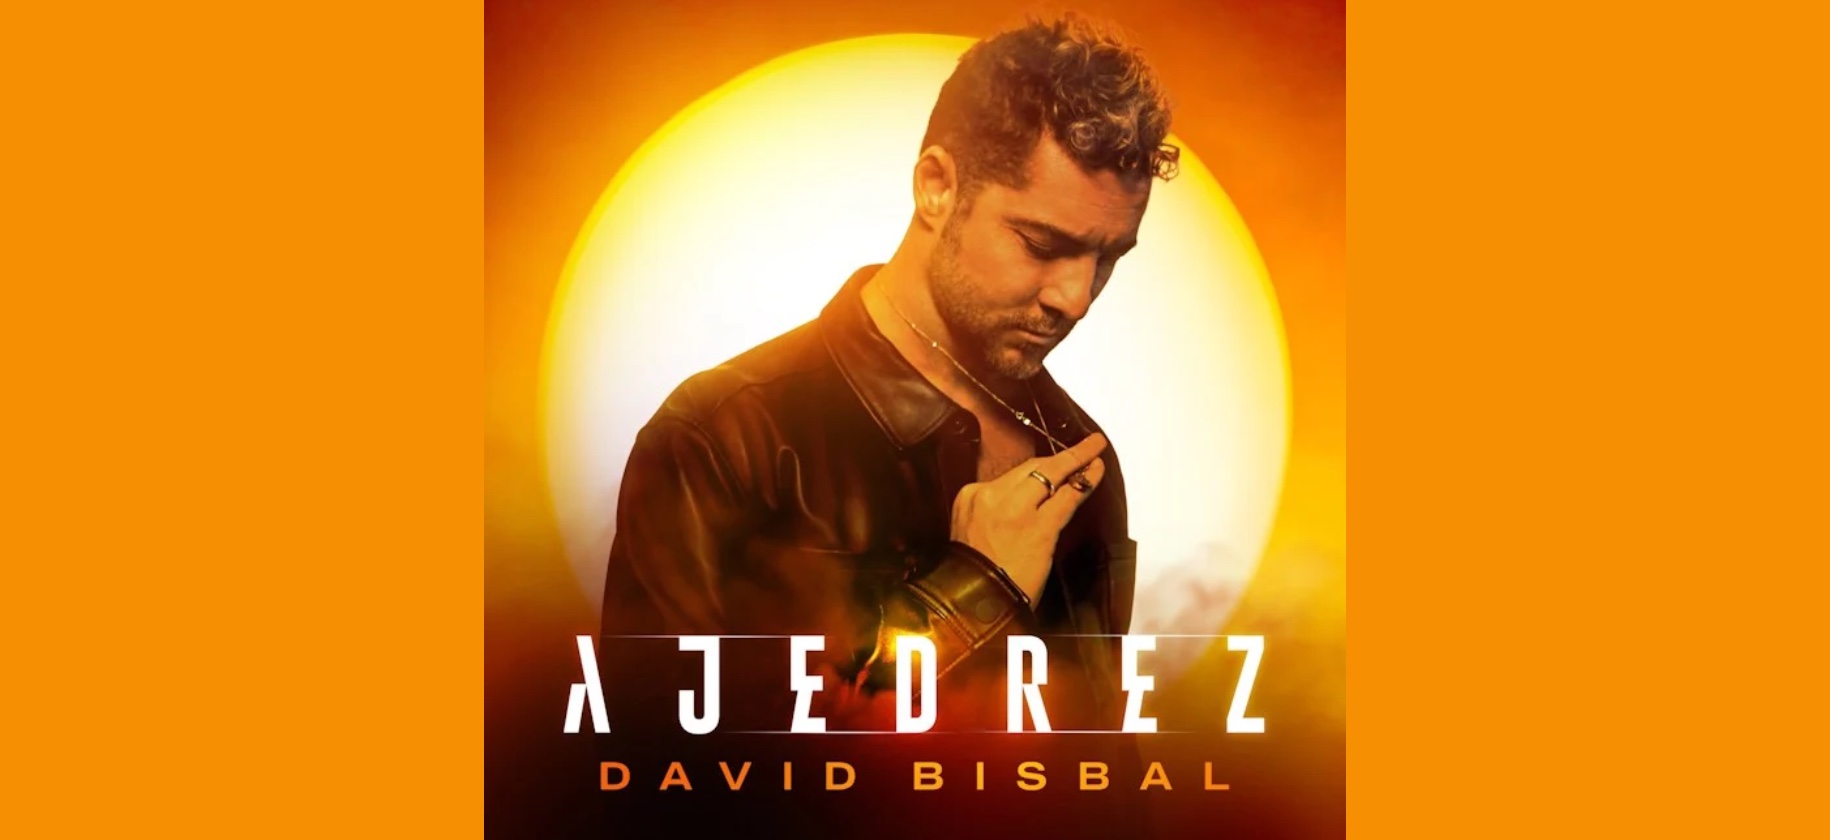 DAVID BISBAL inicia el 2023 con una nueva canción: Ajedrez, un